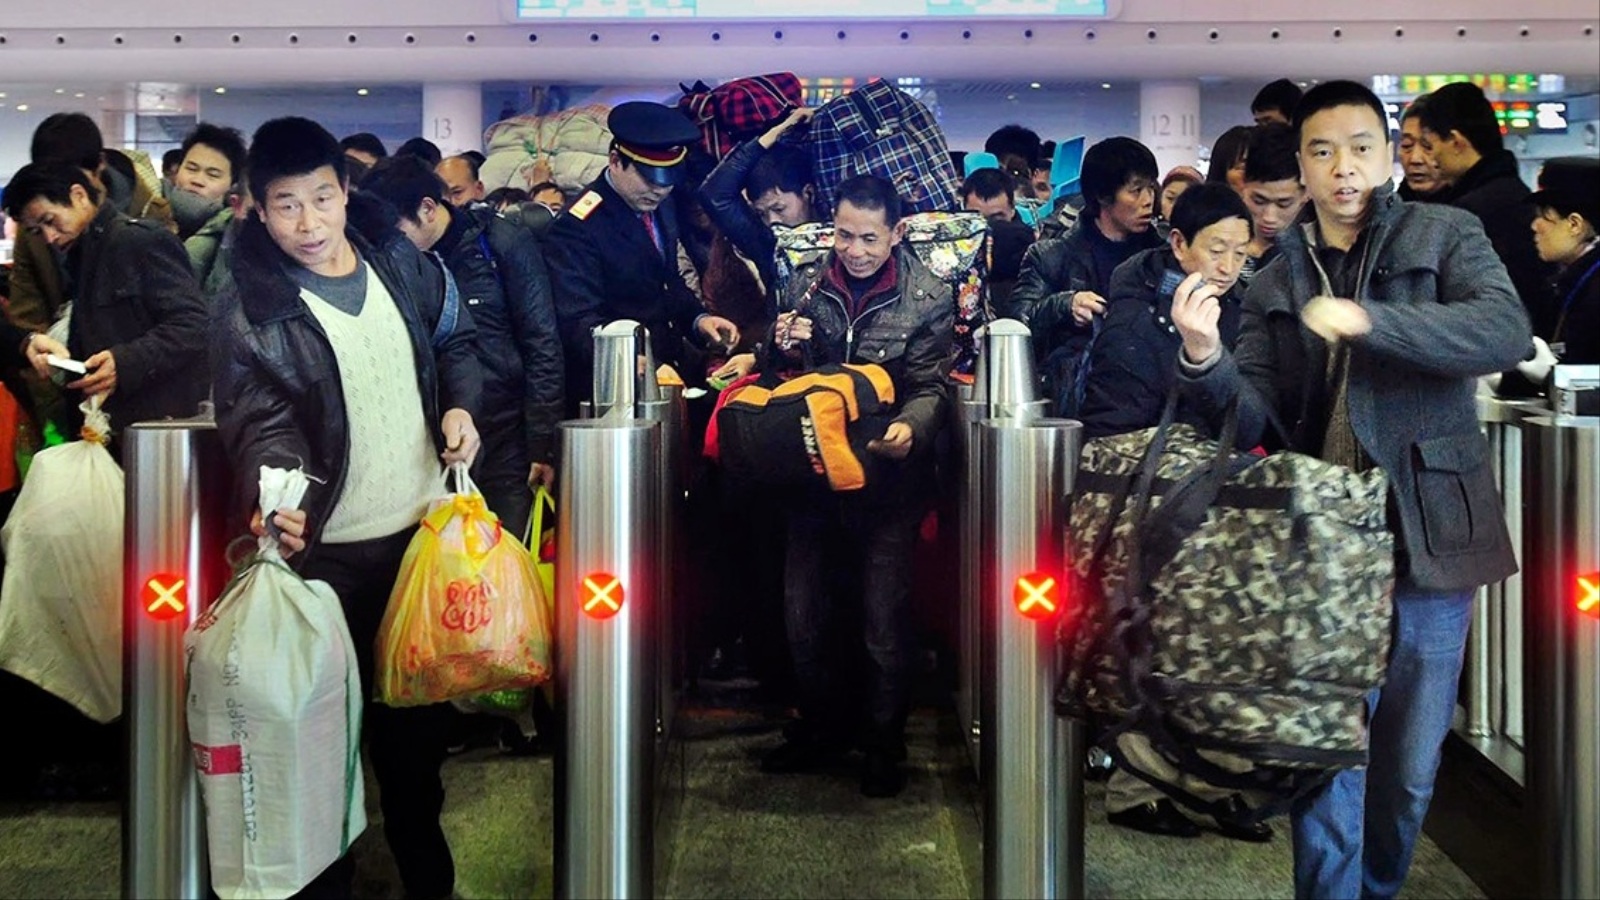 ‪حركة نشطة في المطارات ومحطات القطارات في الصين بالعطل الرسمية والأعياد‬ (الجزيرة)